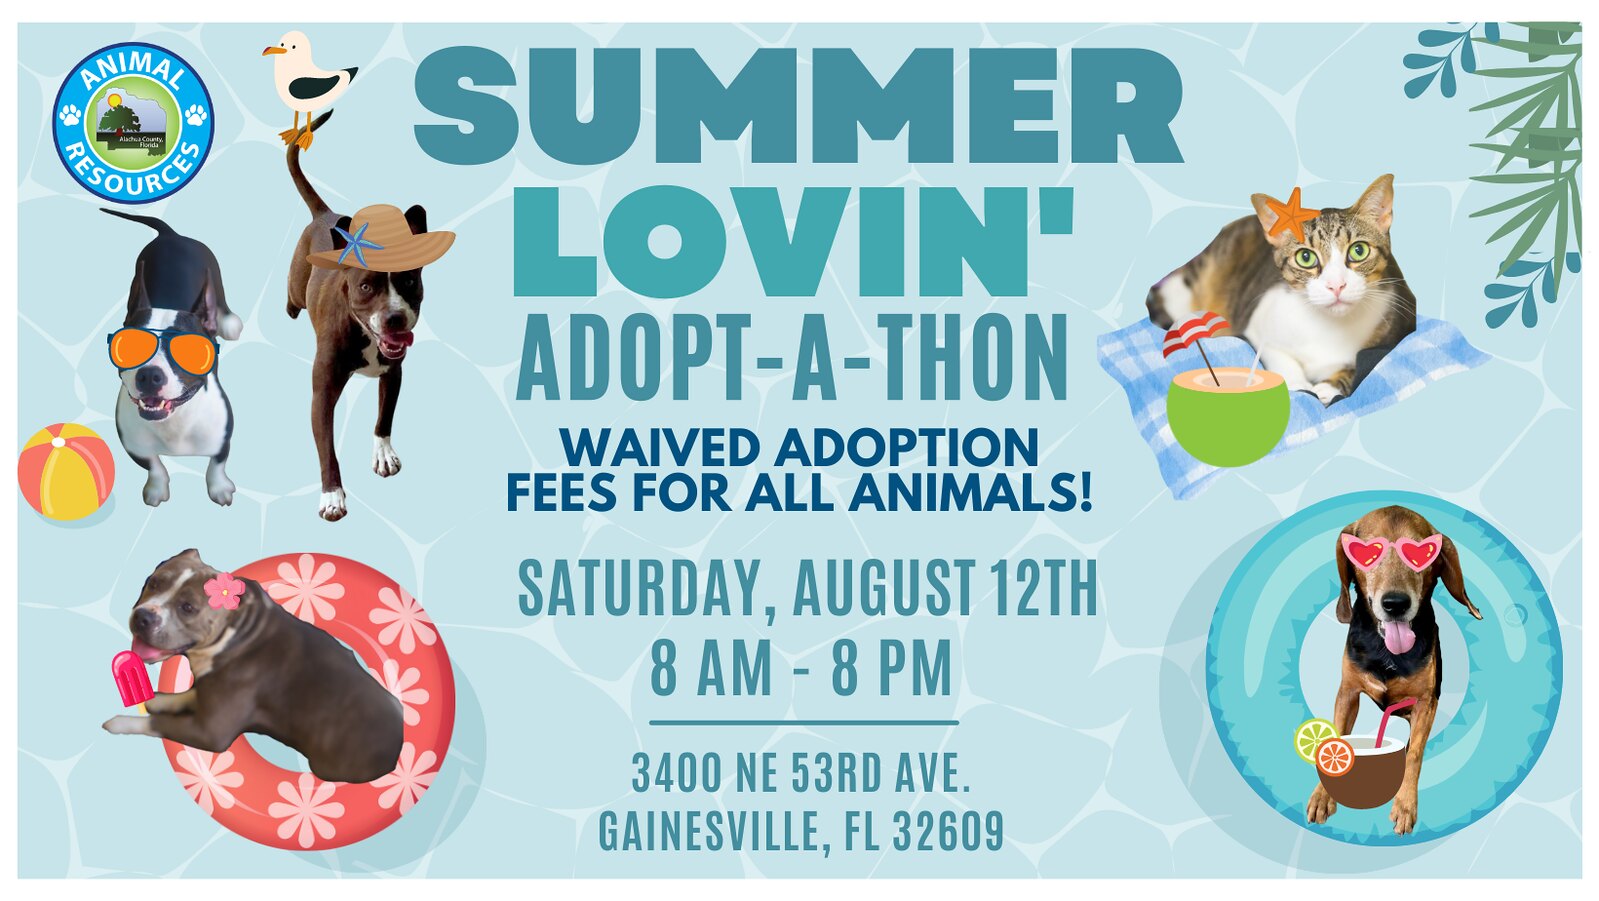 Summer Lovin' Adoption event flyer